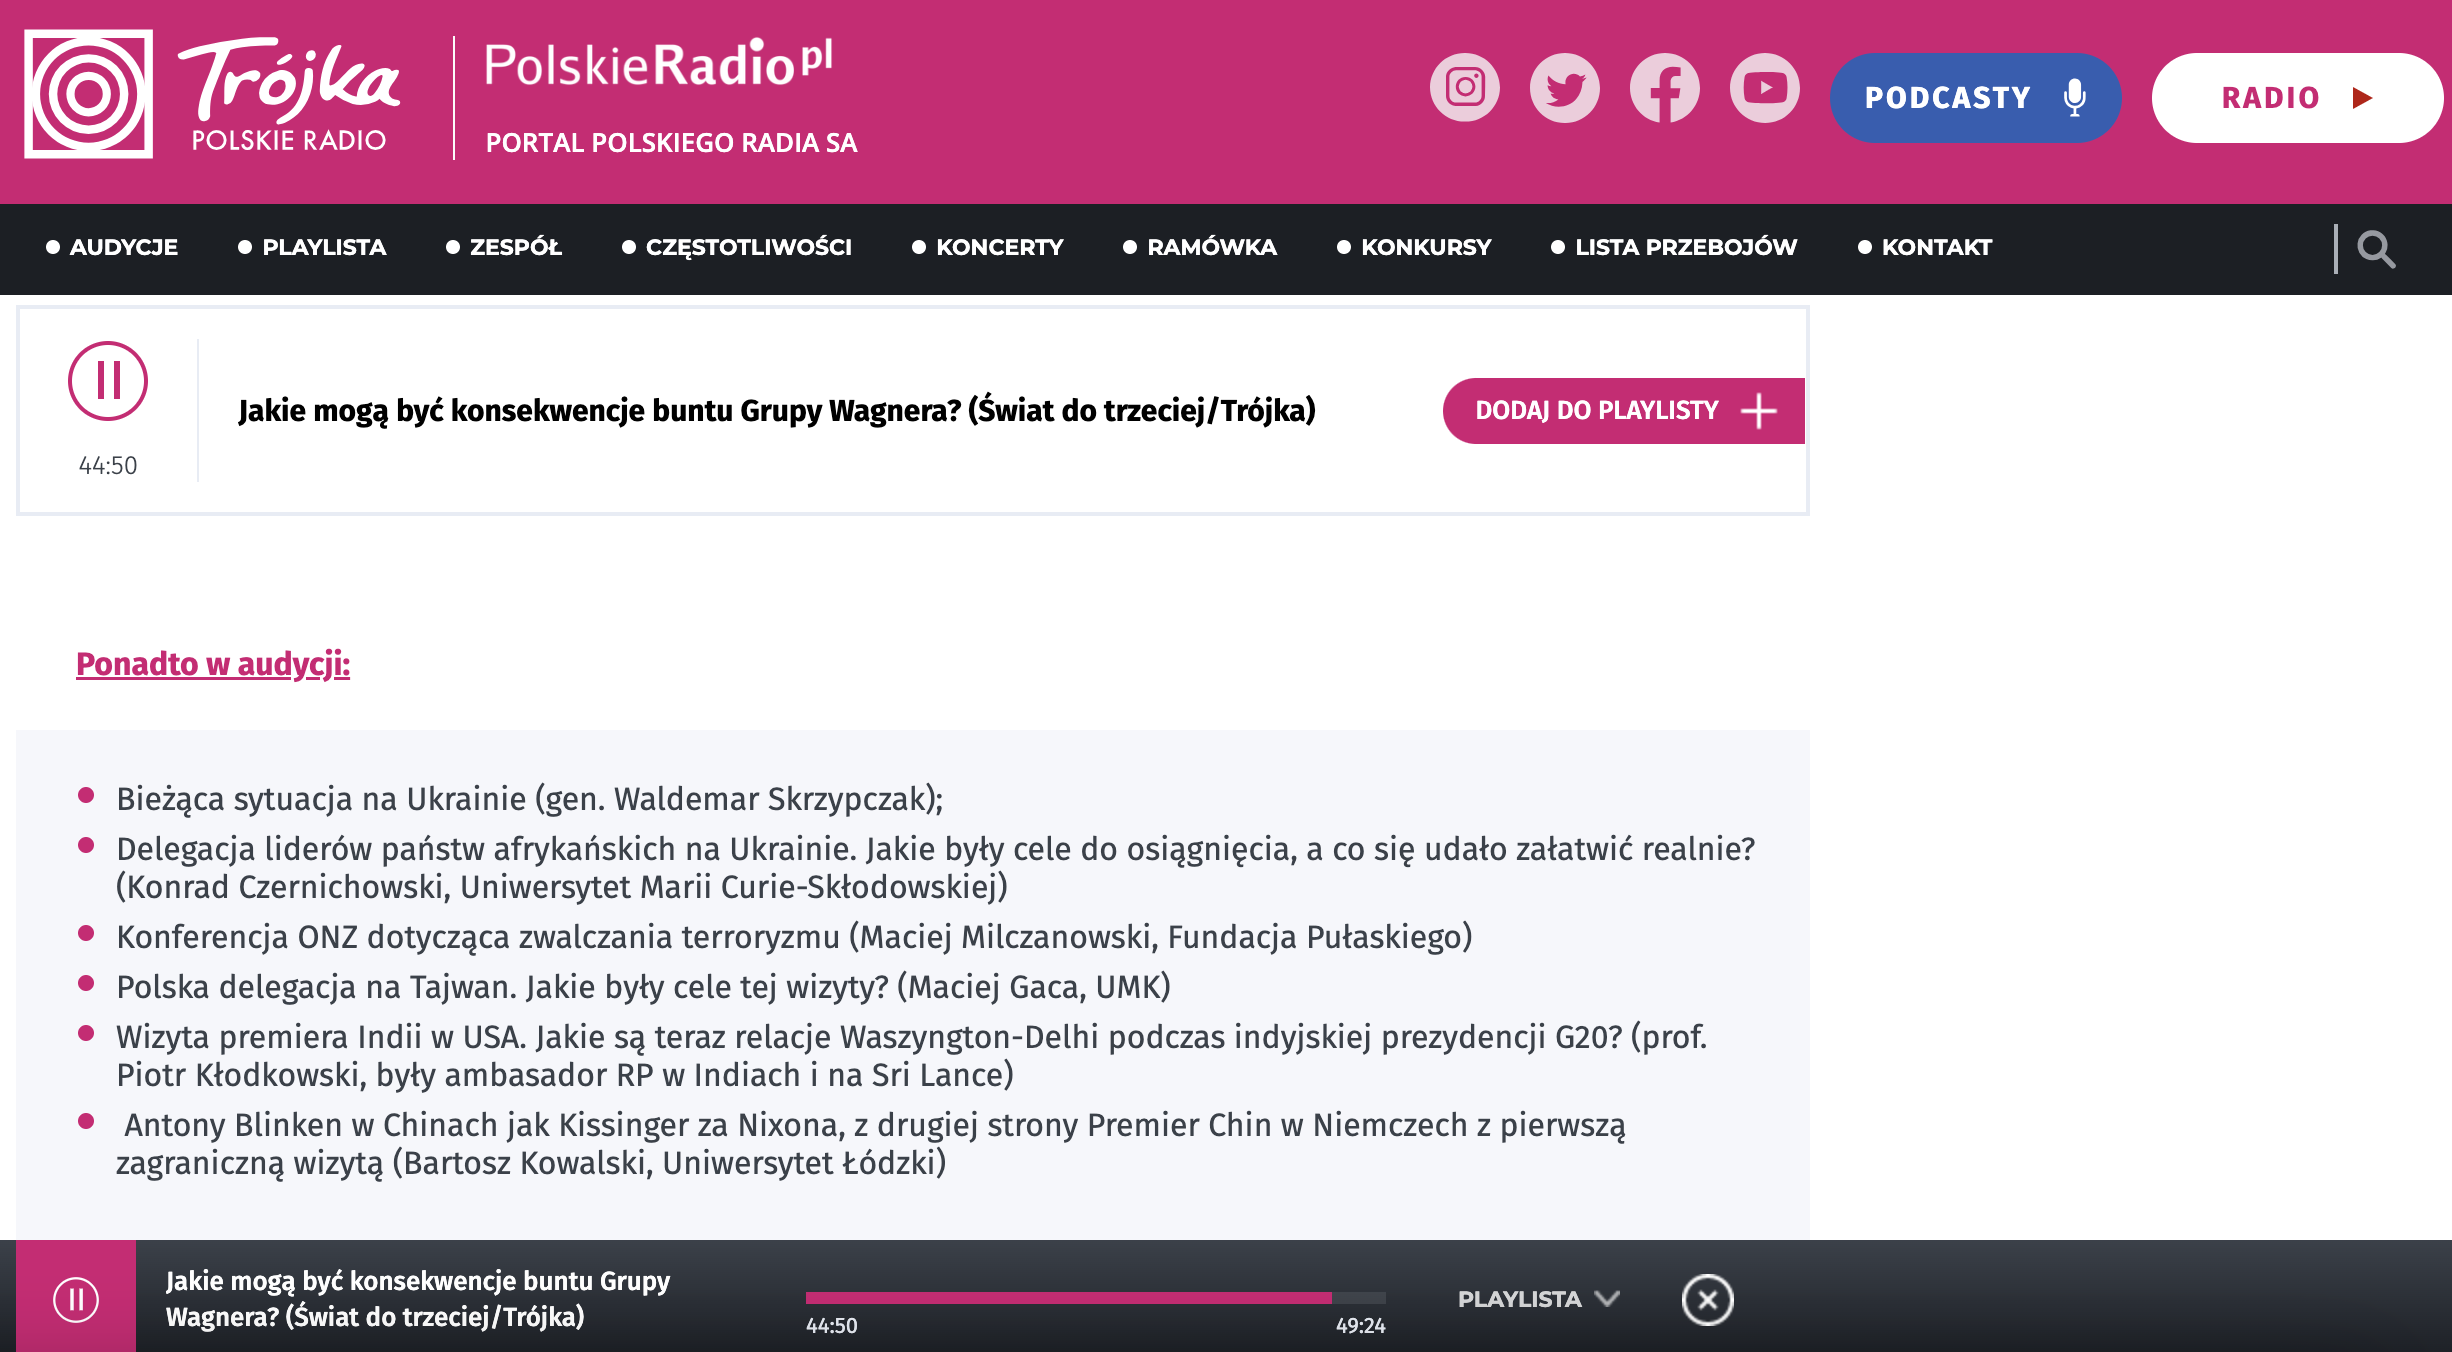 Zrzut ekranu strony internetowej Trójka Polskie Radio/Screenshot of Trójka Polskie Radio website